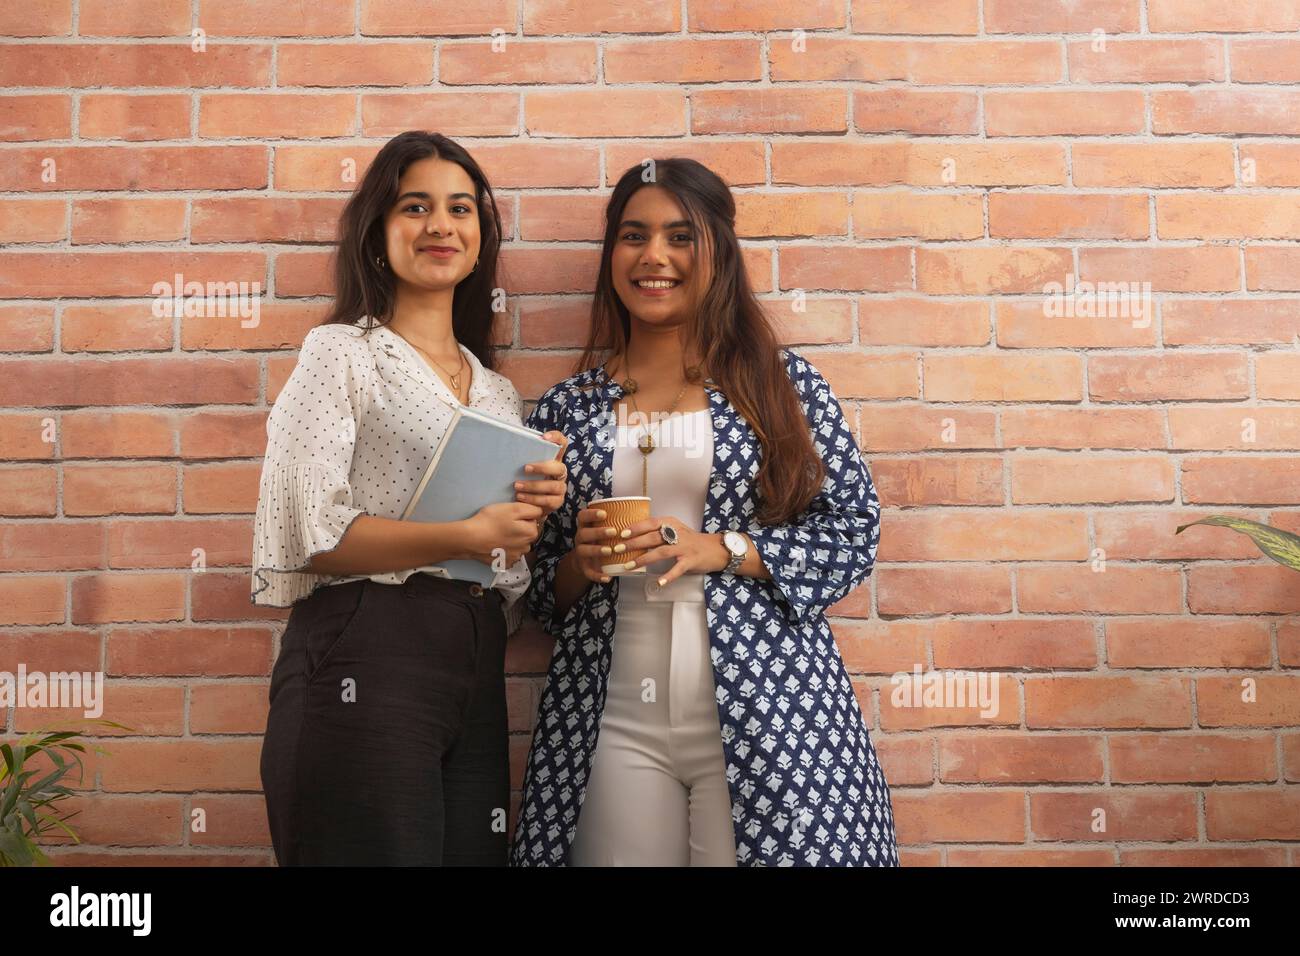 Porträt von zwei lächelnden Geschäftsfrauen, die stehen und die Kamera vor einer Ziegelwand betrachten Stockfoto